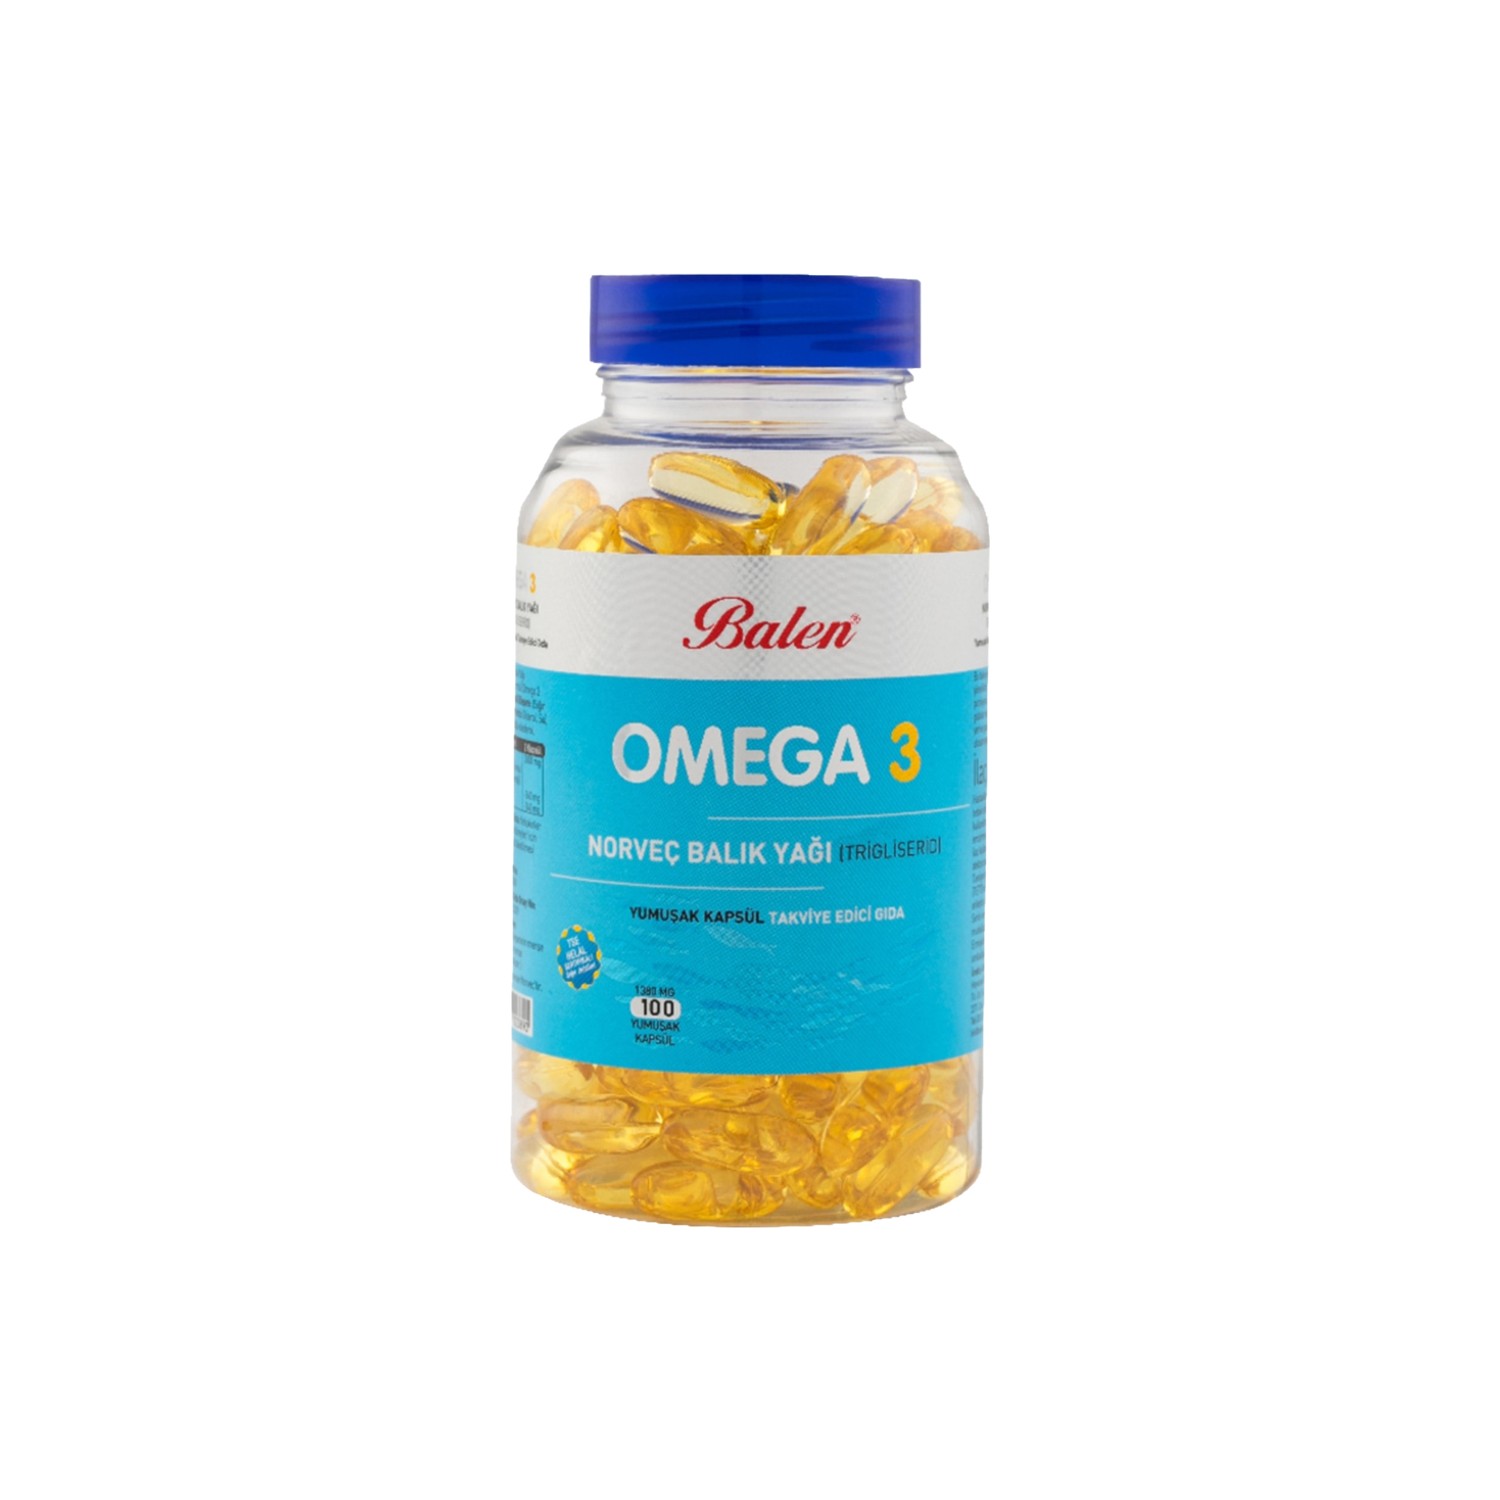 Рыбий жир Balen Omega 3, 100 капсул, 1380 мг рыбий жир с маслом чеснока 330 мг 100 шт капсулы